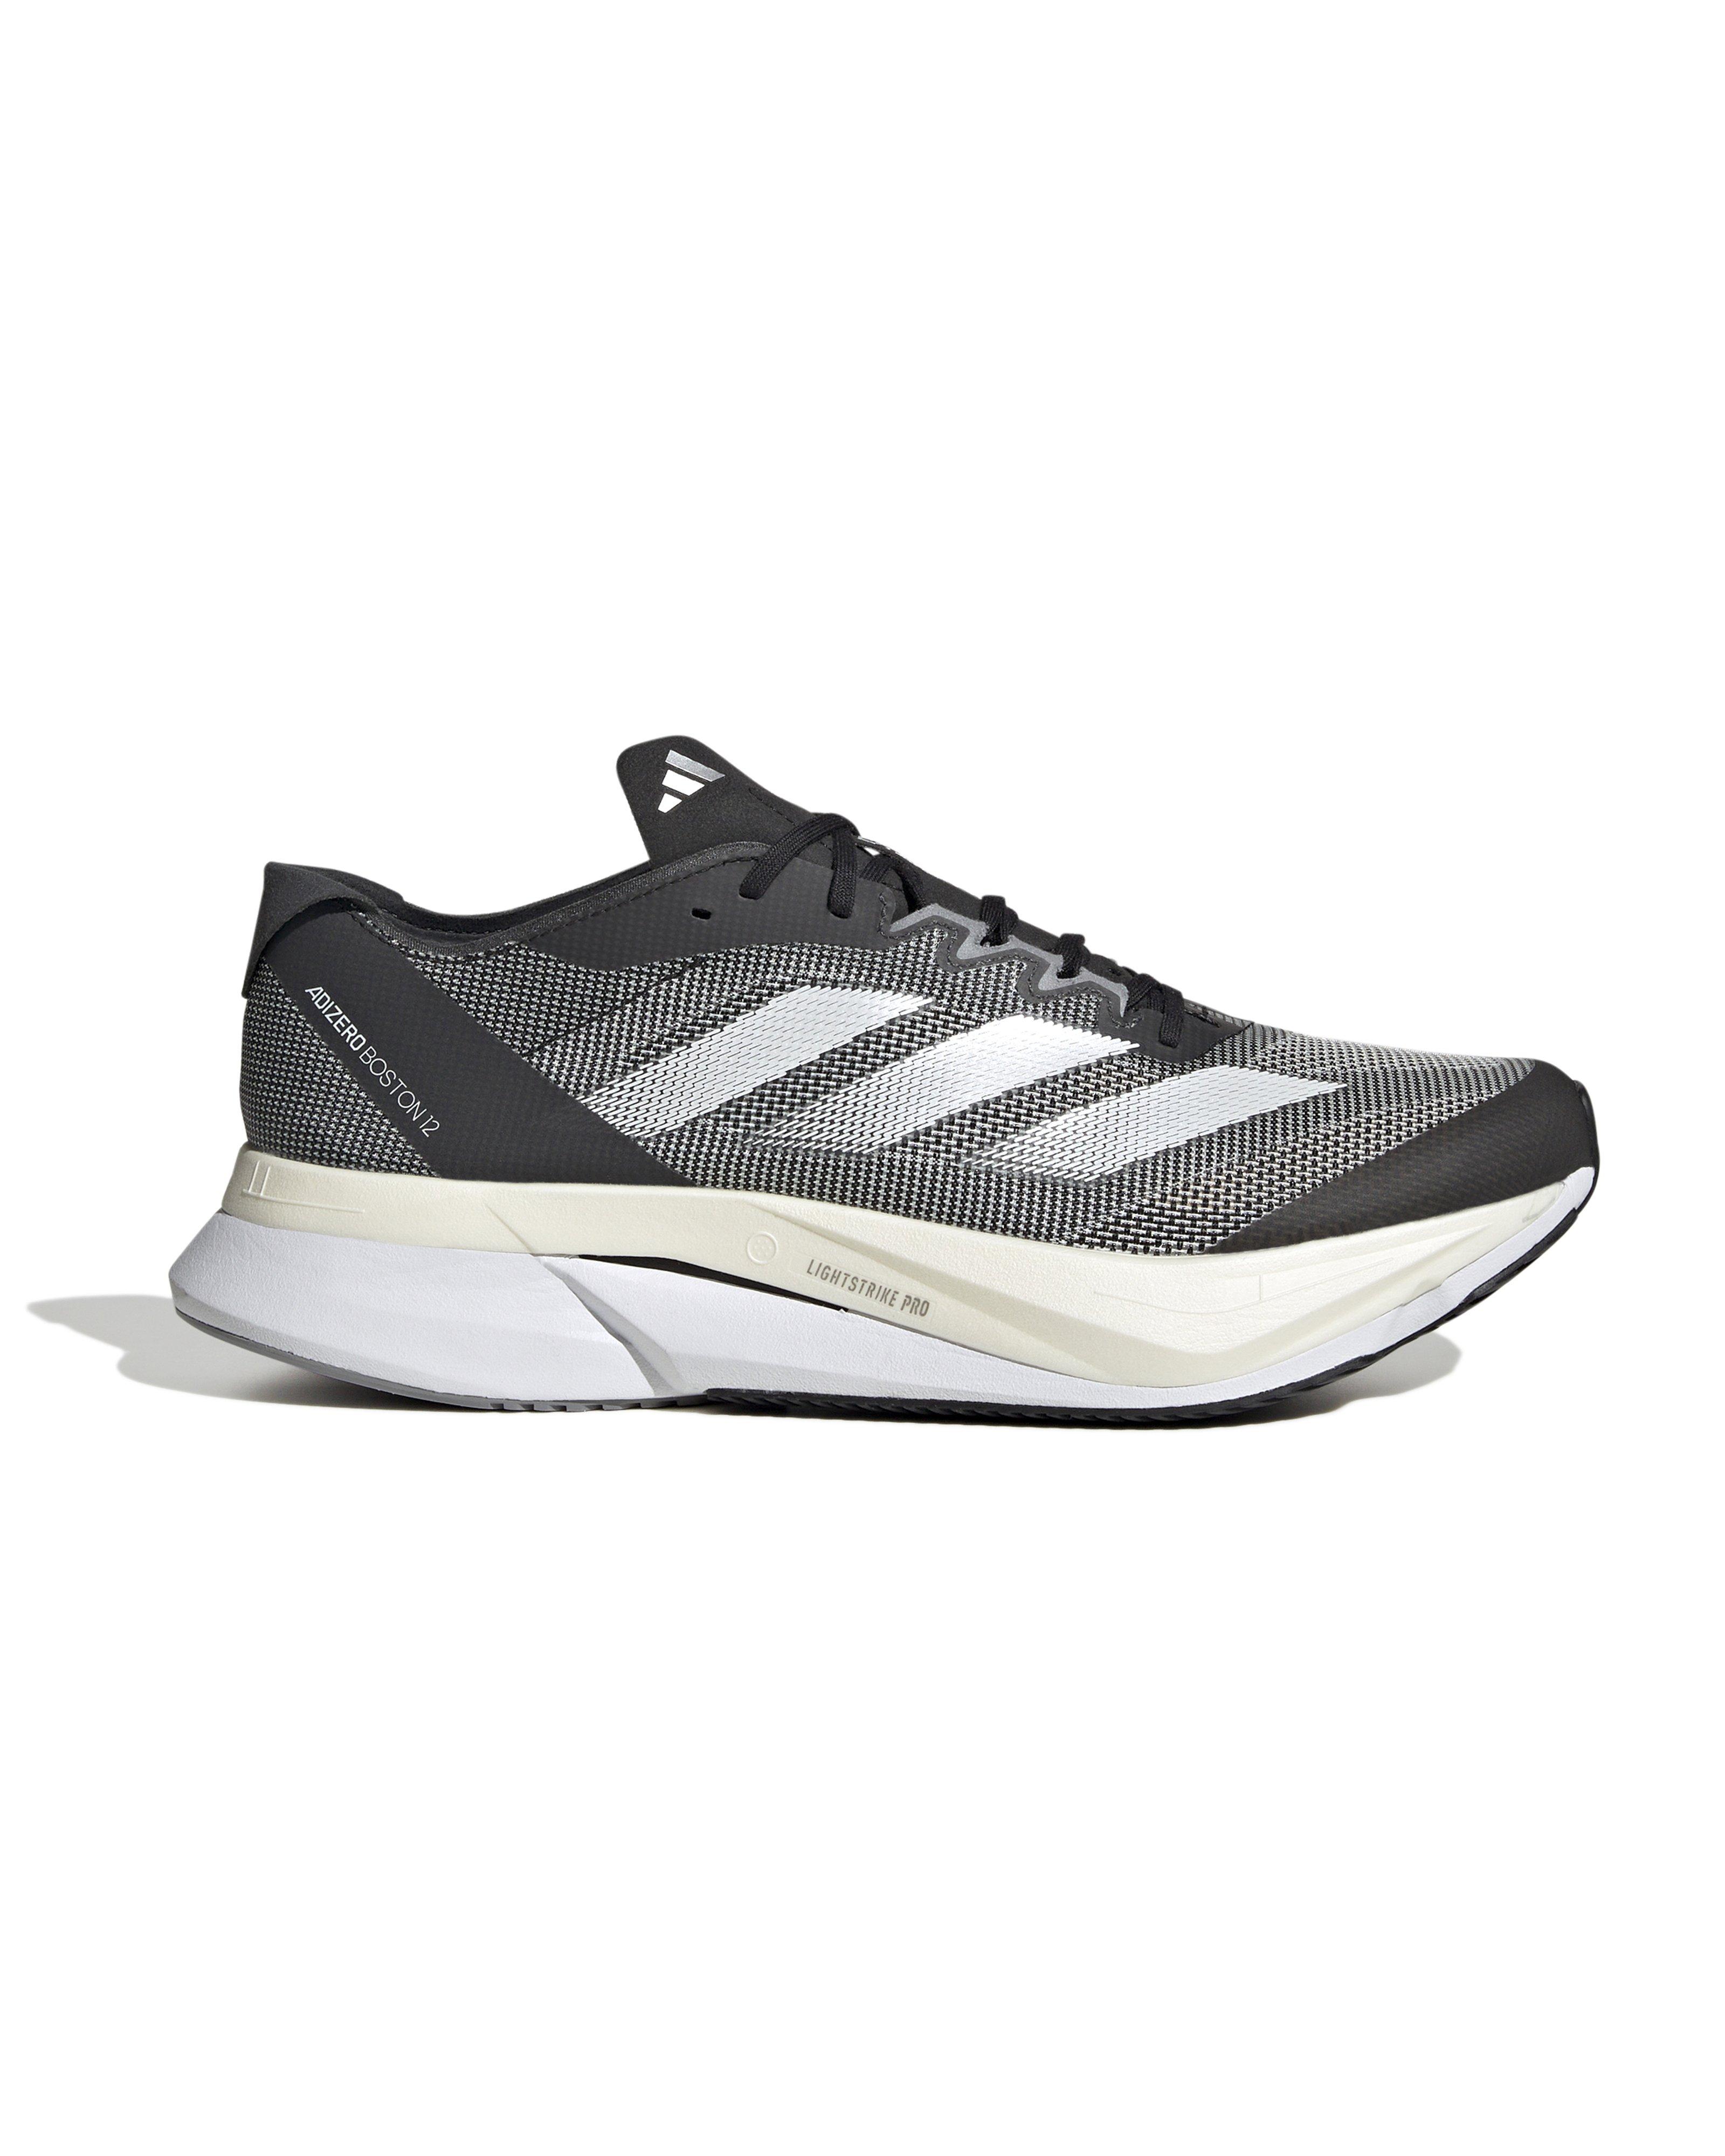 Adidas Men’s ADIZERO BOSTON 12 Road Running Shoes -  Black